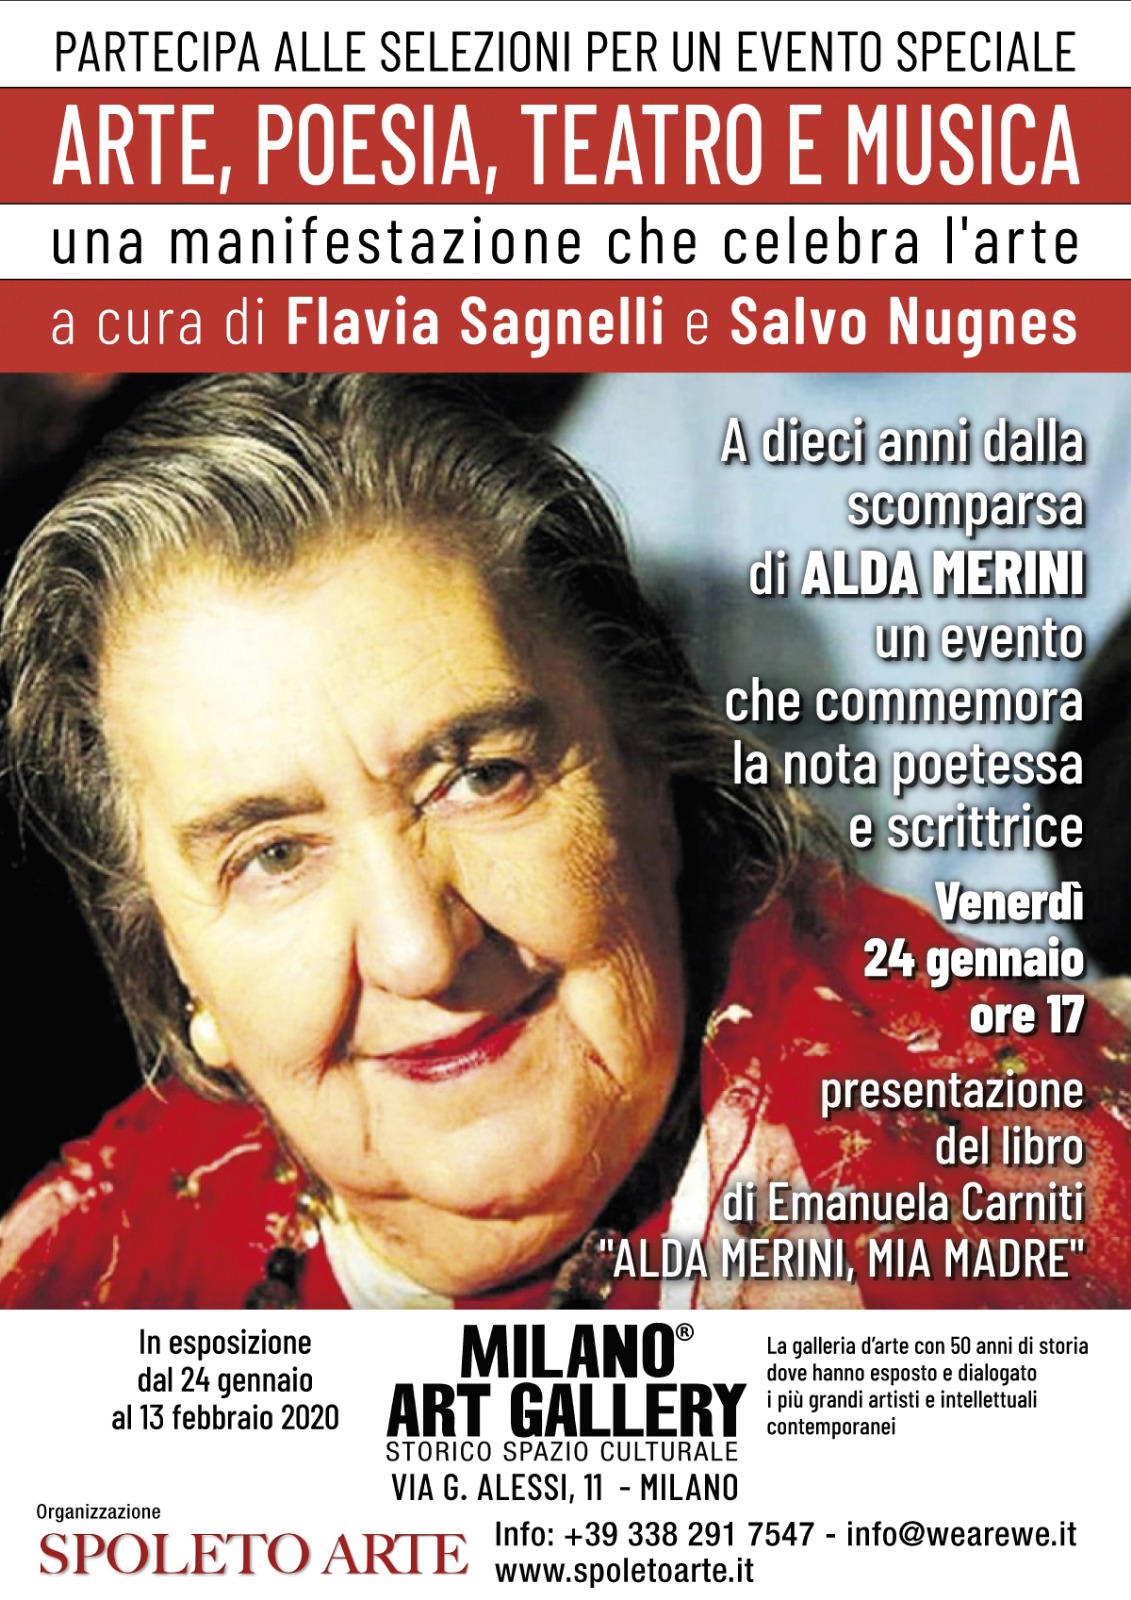 Milano Art Gallery: un evento per commemorare Alda Merini nell’arte